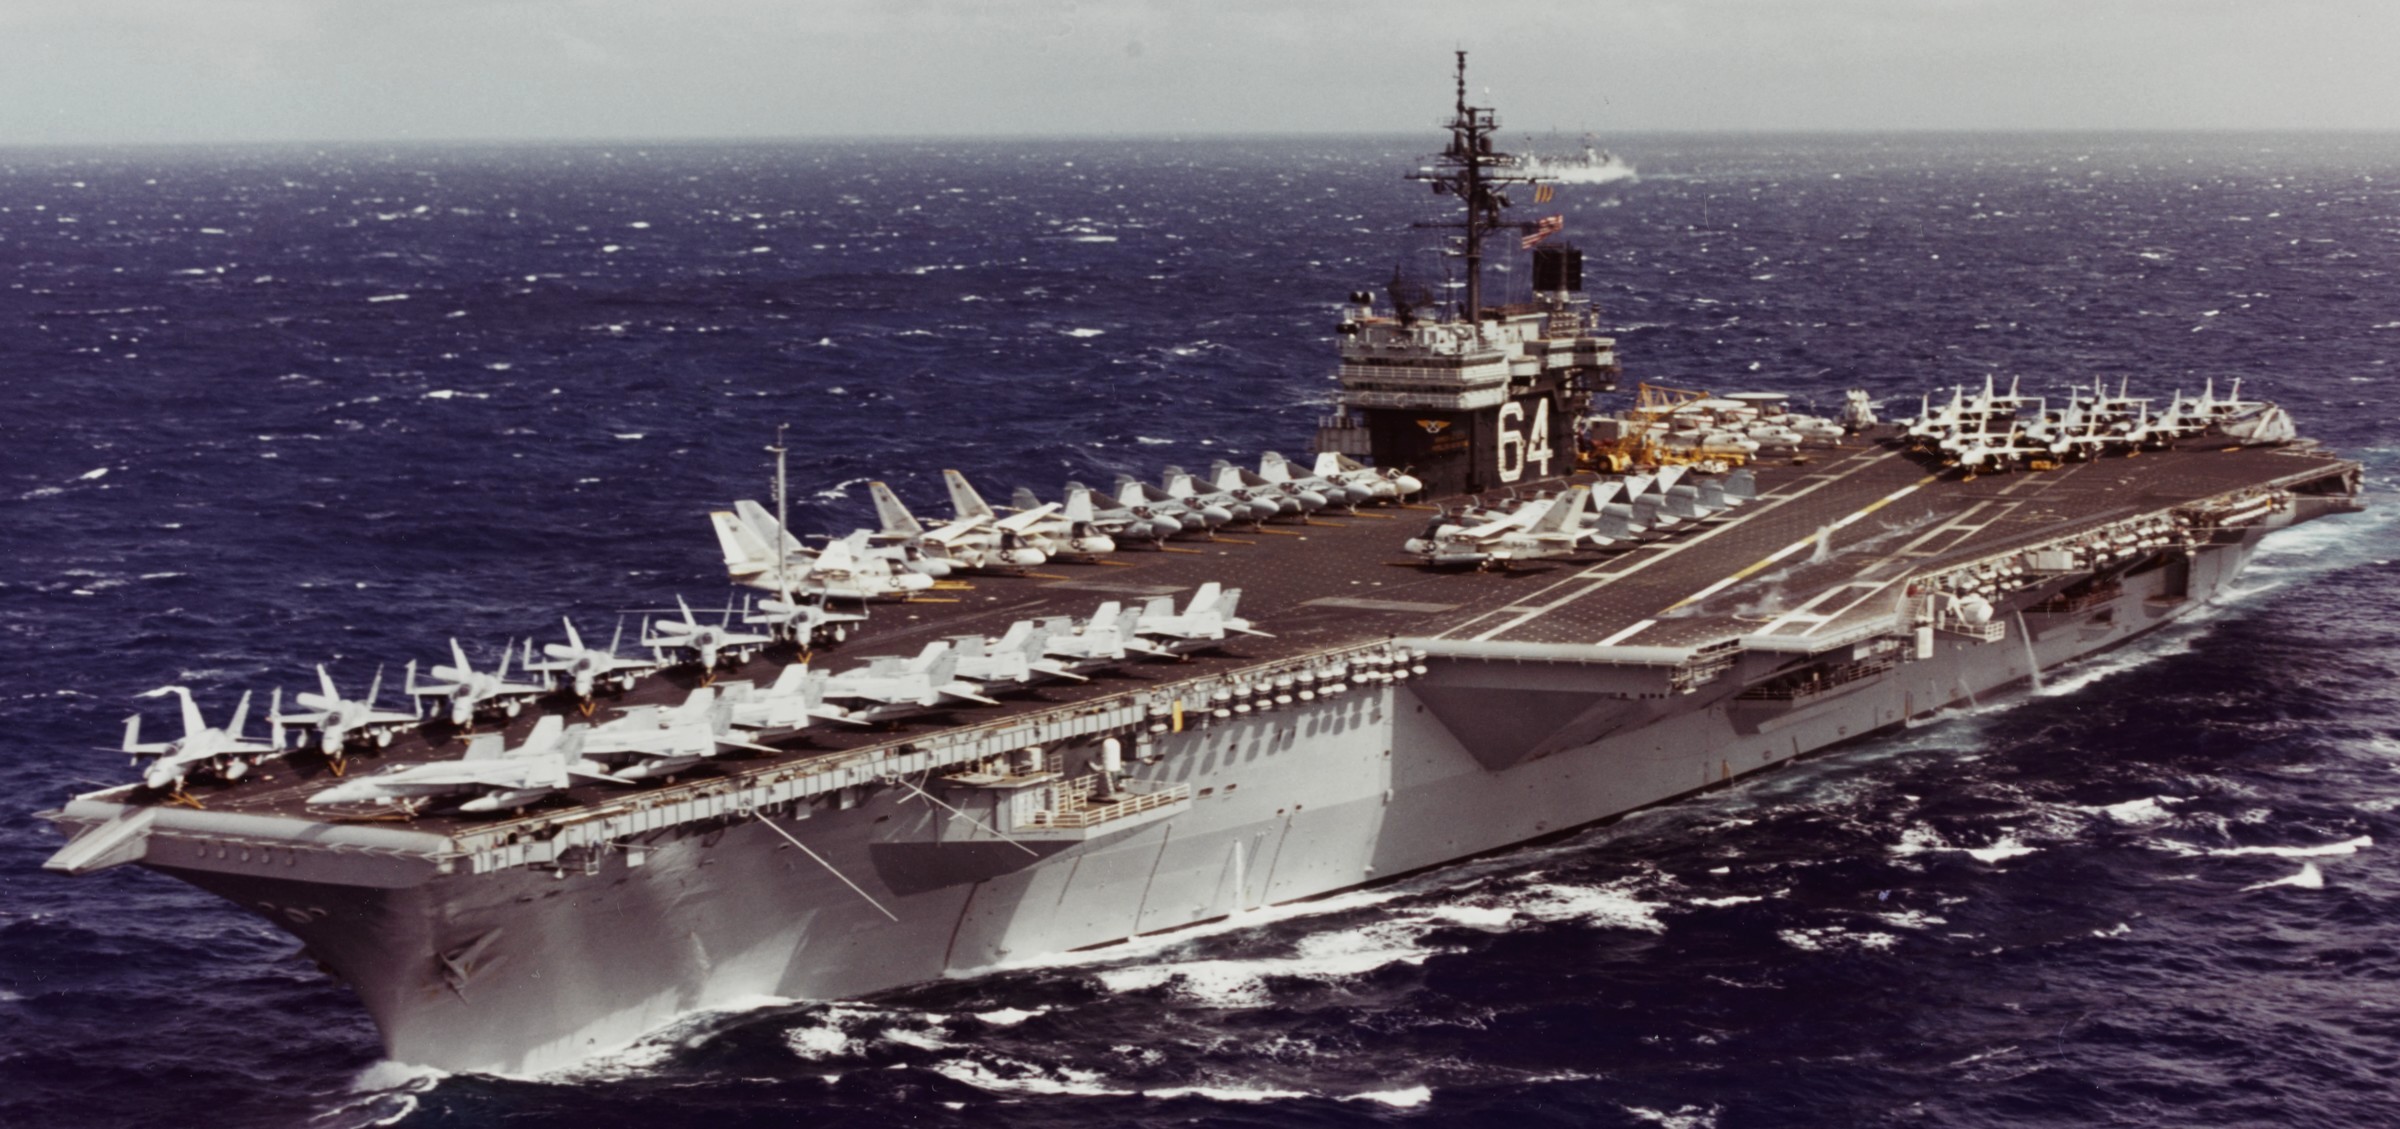 kitty hawk class aircraft carrier us navy cv-64 uss constellation 87c